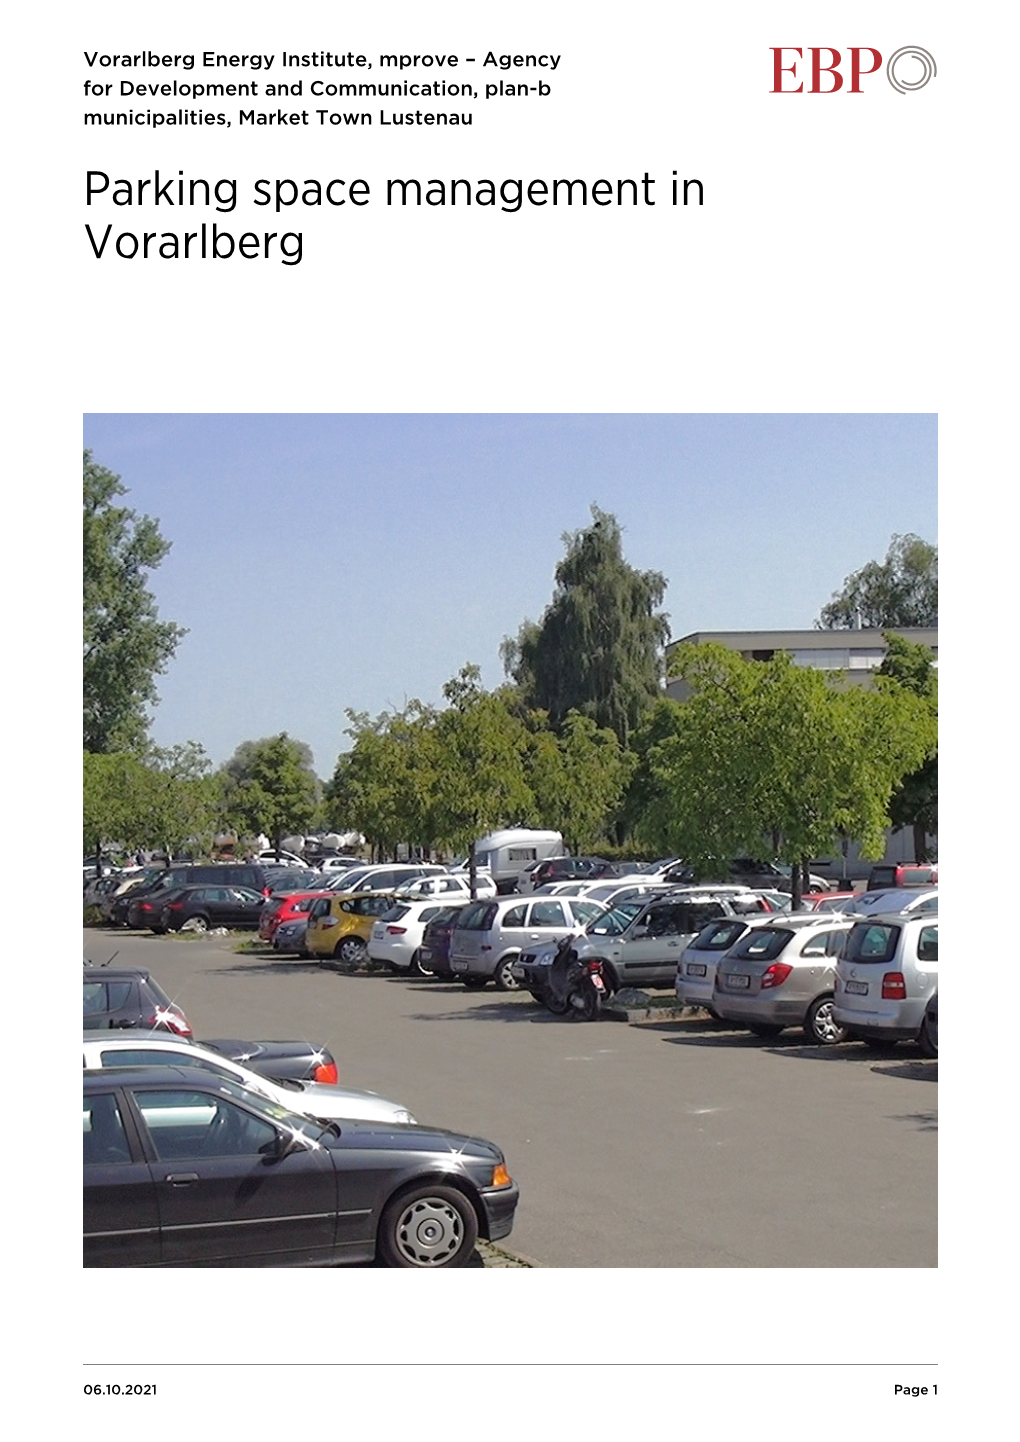 Parking Space Management in Vorarlberg